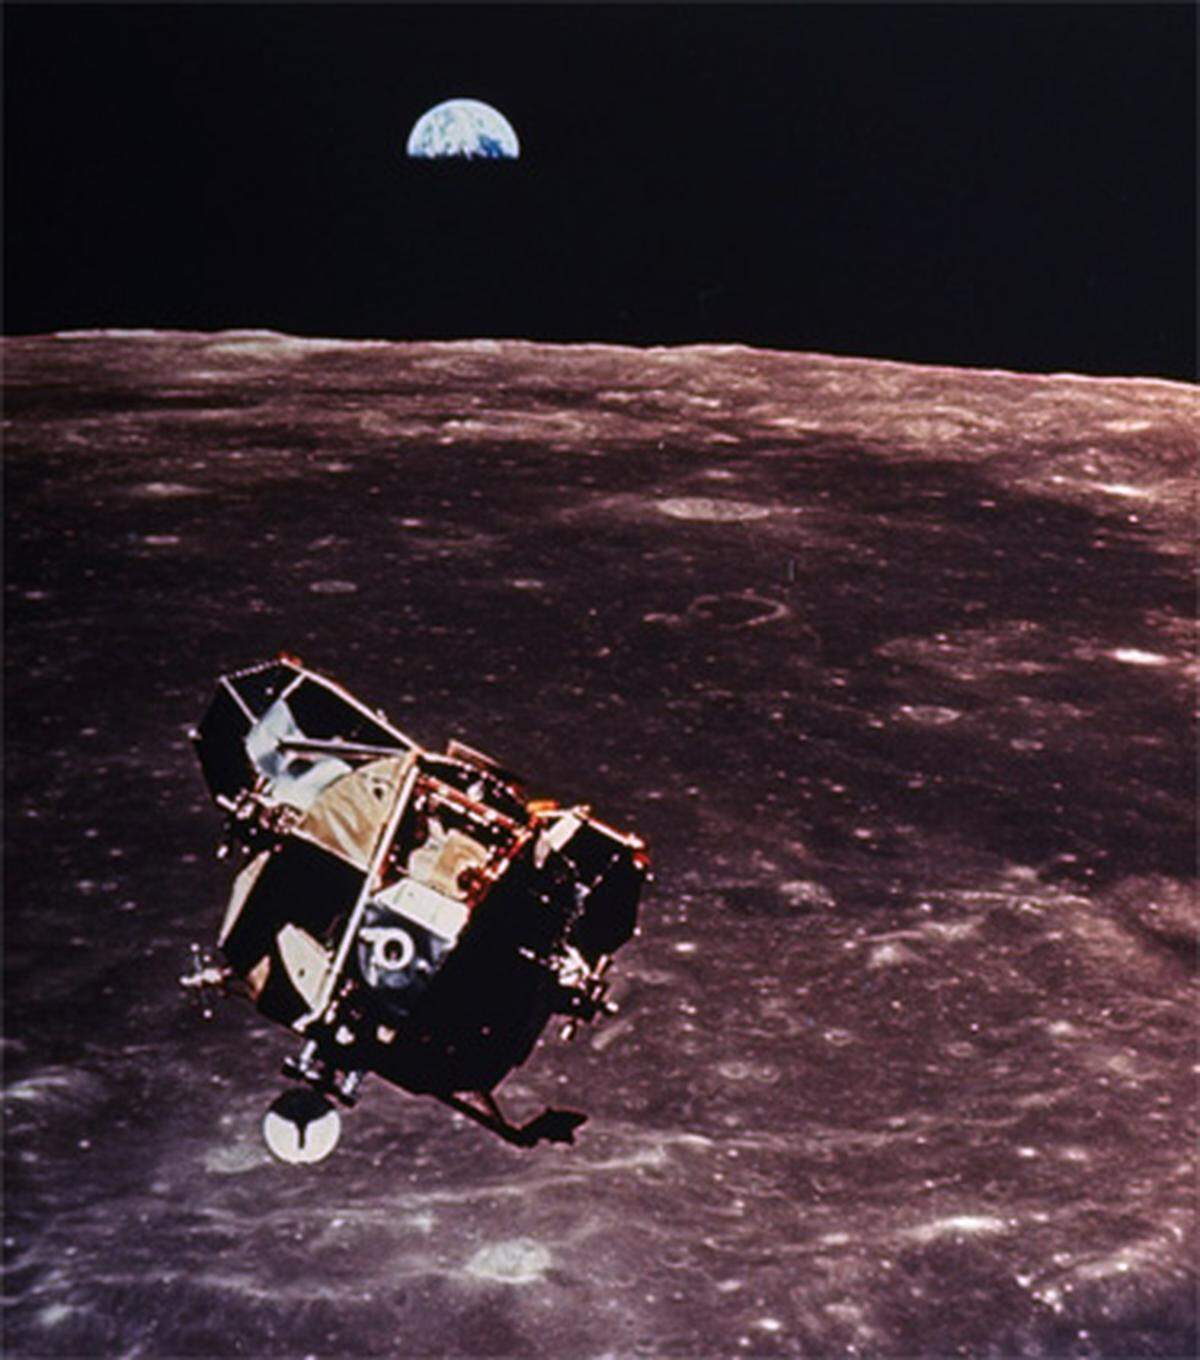 Der Oberteil der Landefähre hob wieder vom Mond ab und koppelte sich mit dem Kommandomodul im Orbit. Auf diesem kehrte die Crew am 24. Juli 1969 wieder auf die Erde zurück.